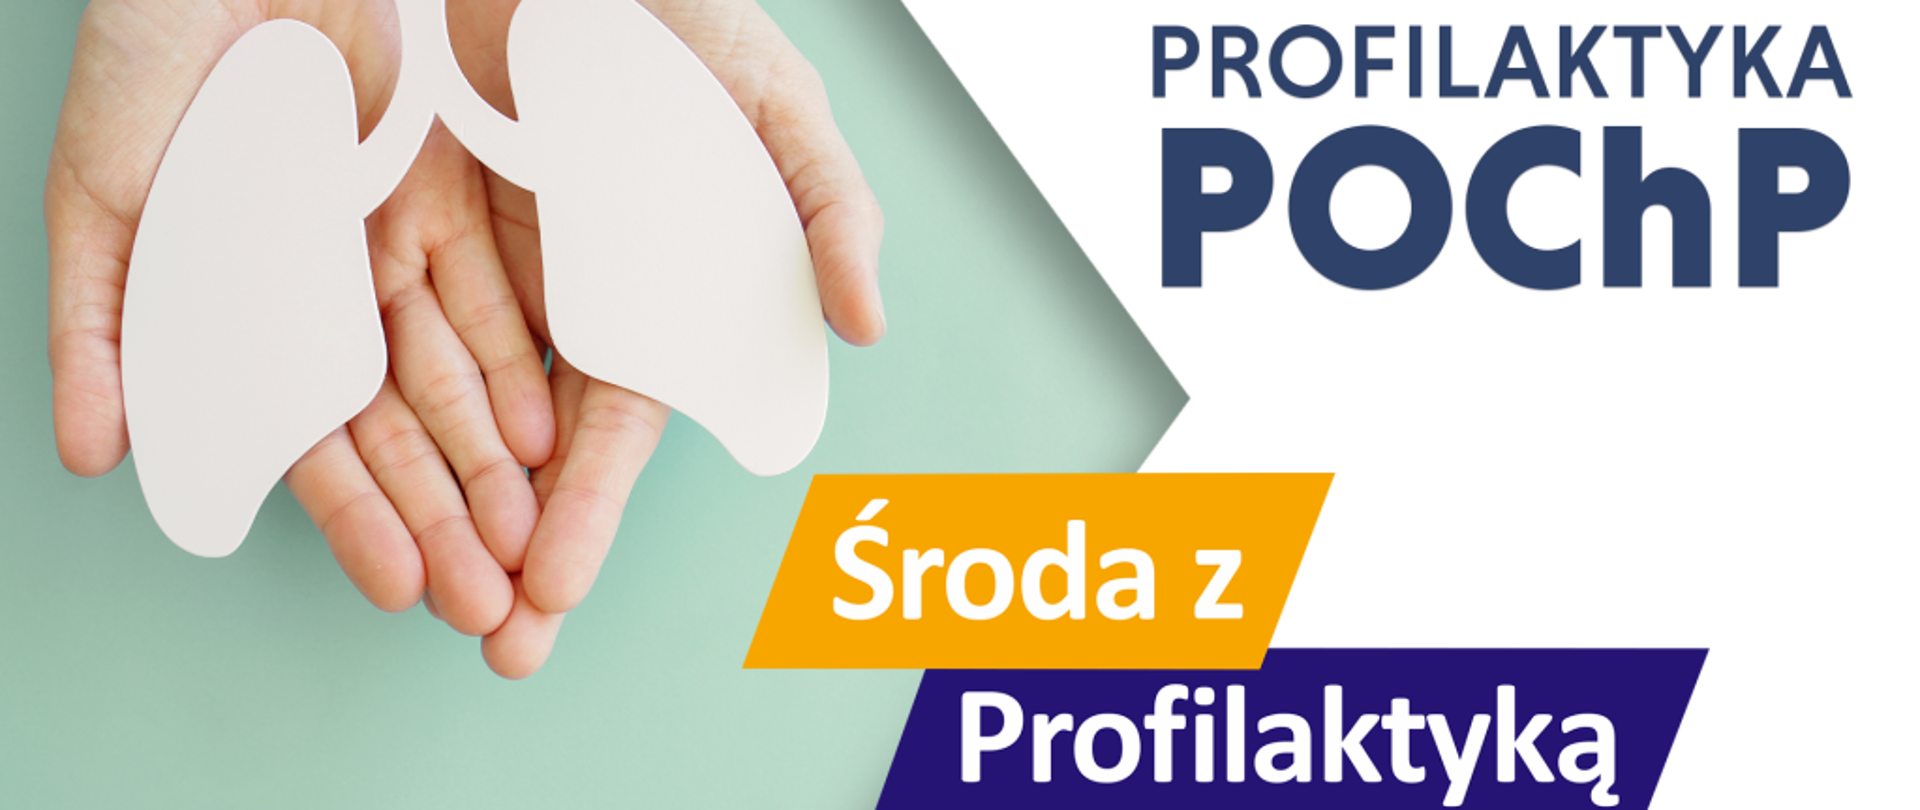 Profilaktyka POChP - Środa z Profilaktyką